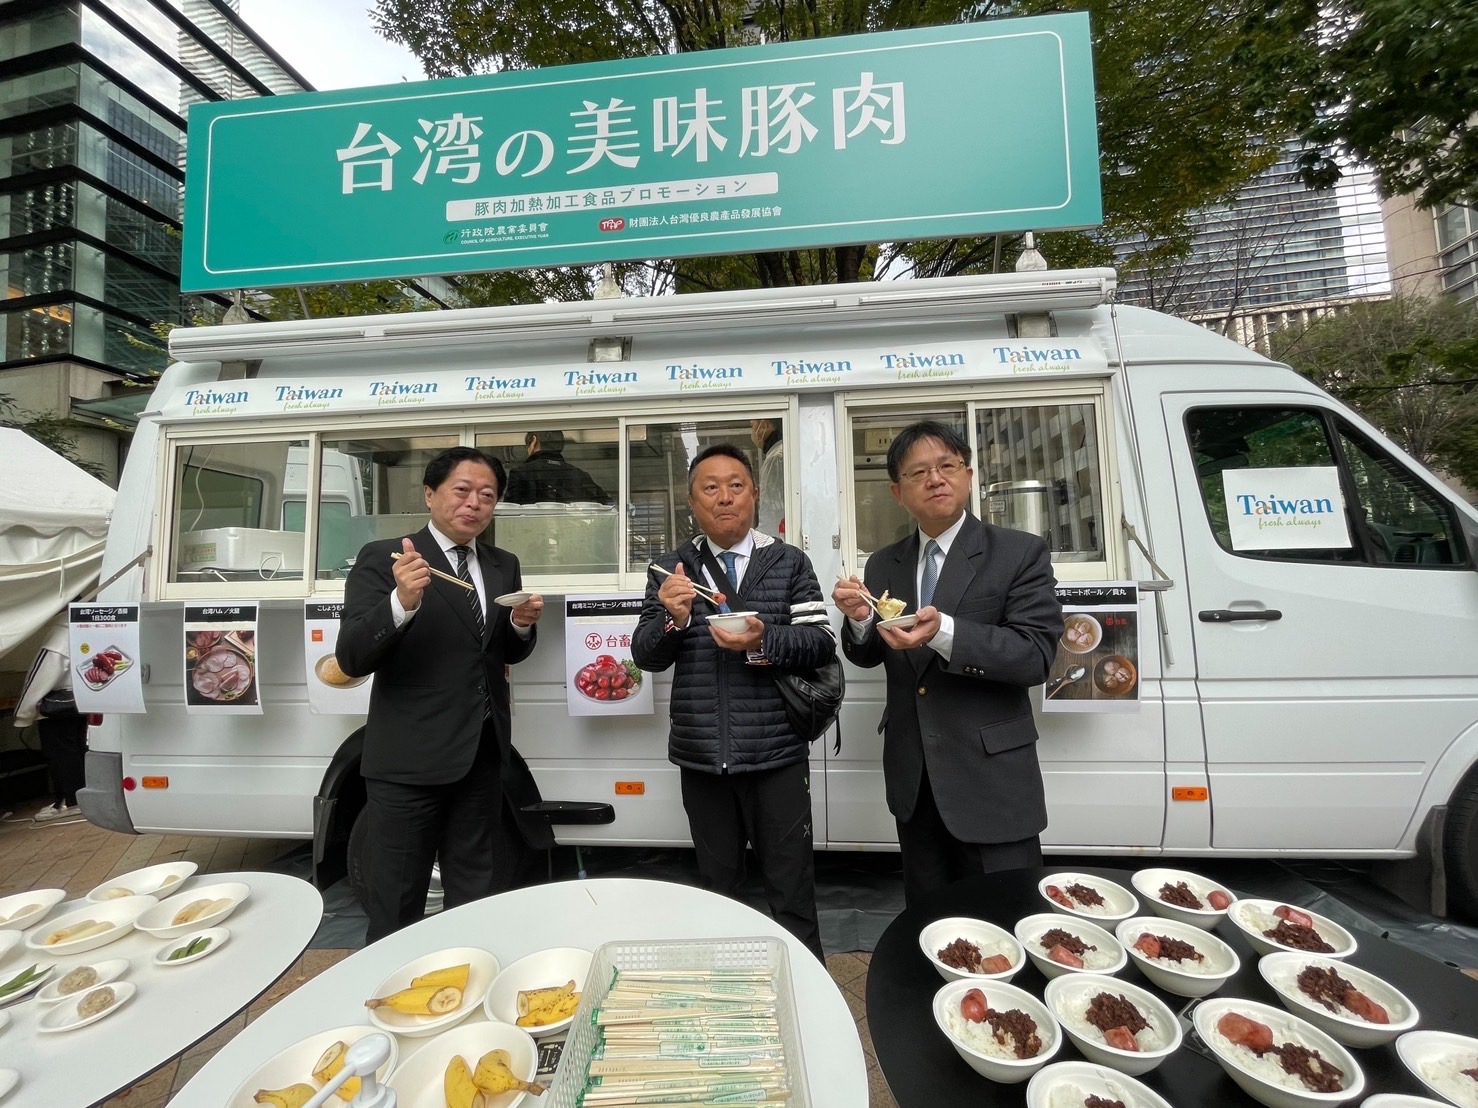 農委會林家榮處長及張經緯處長在東京主持臺灣豬肉餐車活動記者會-3